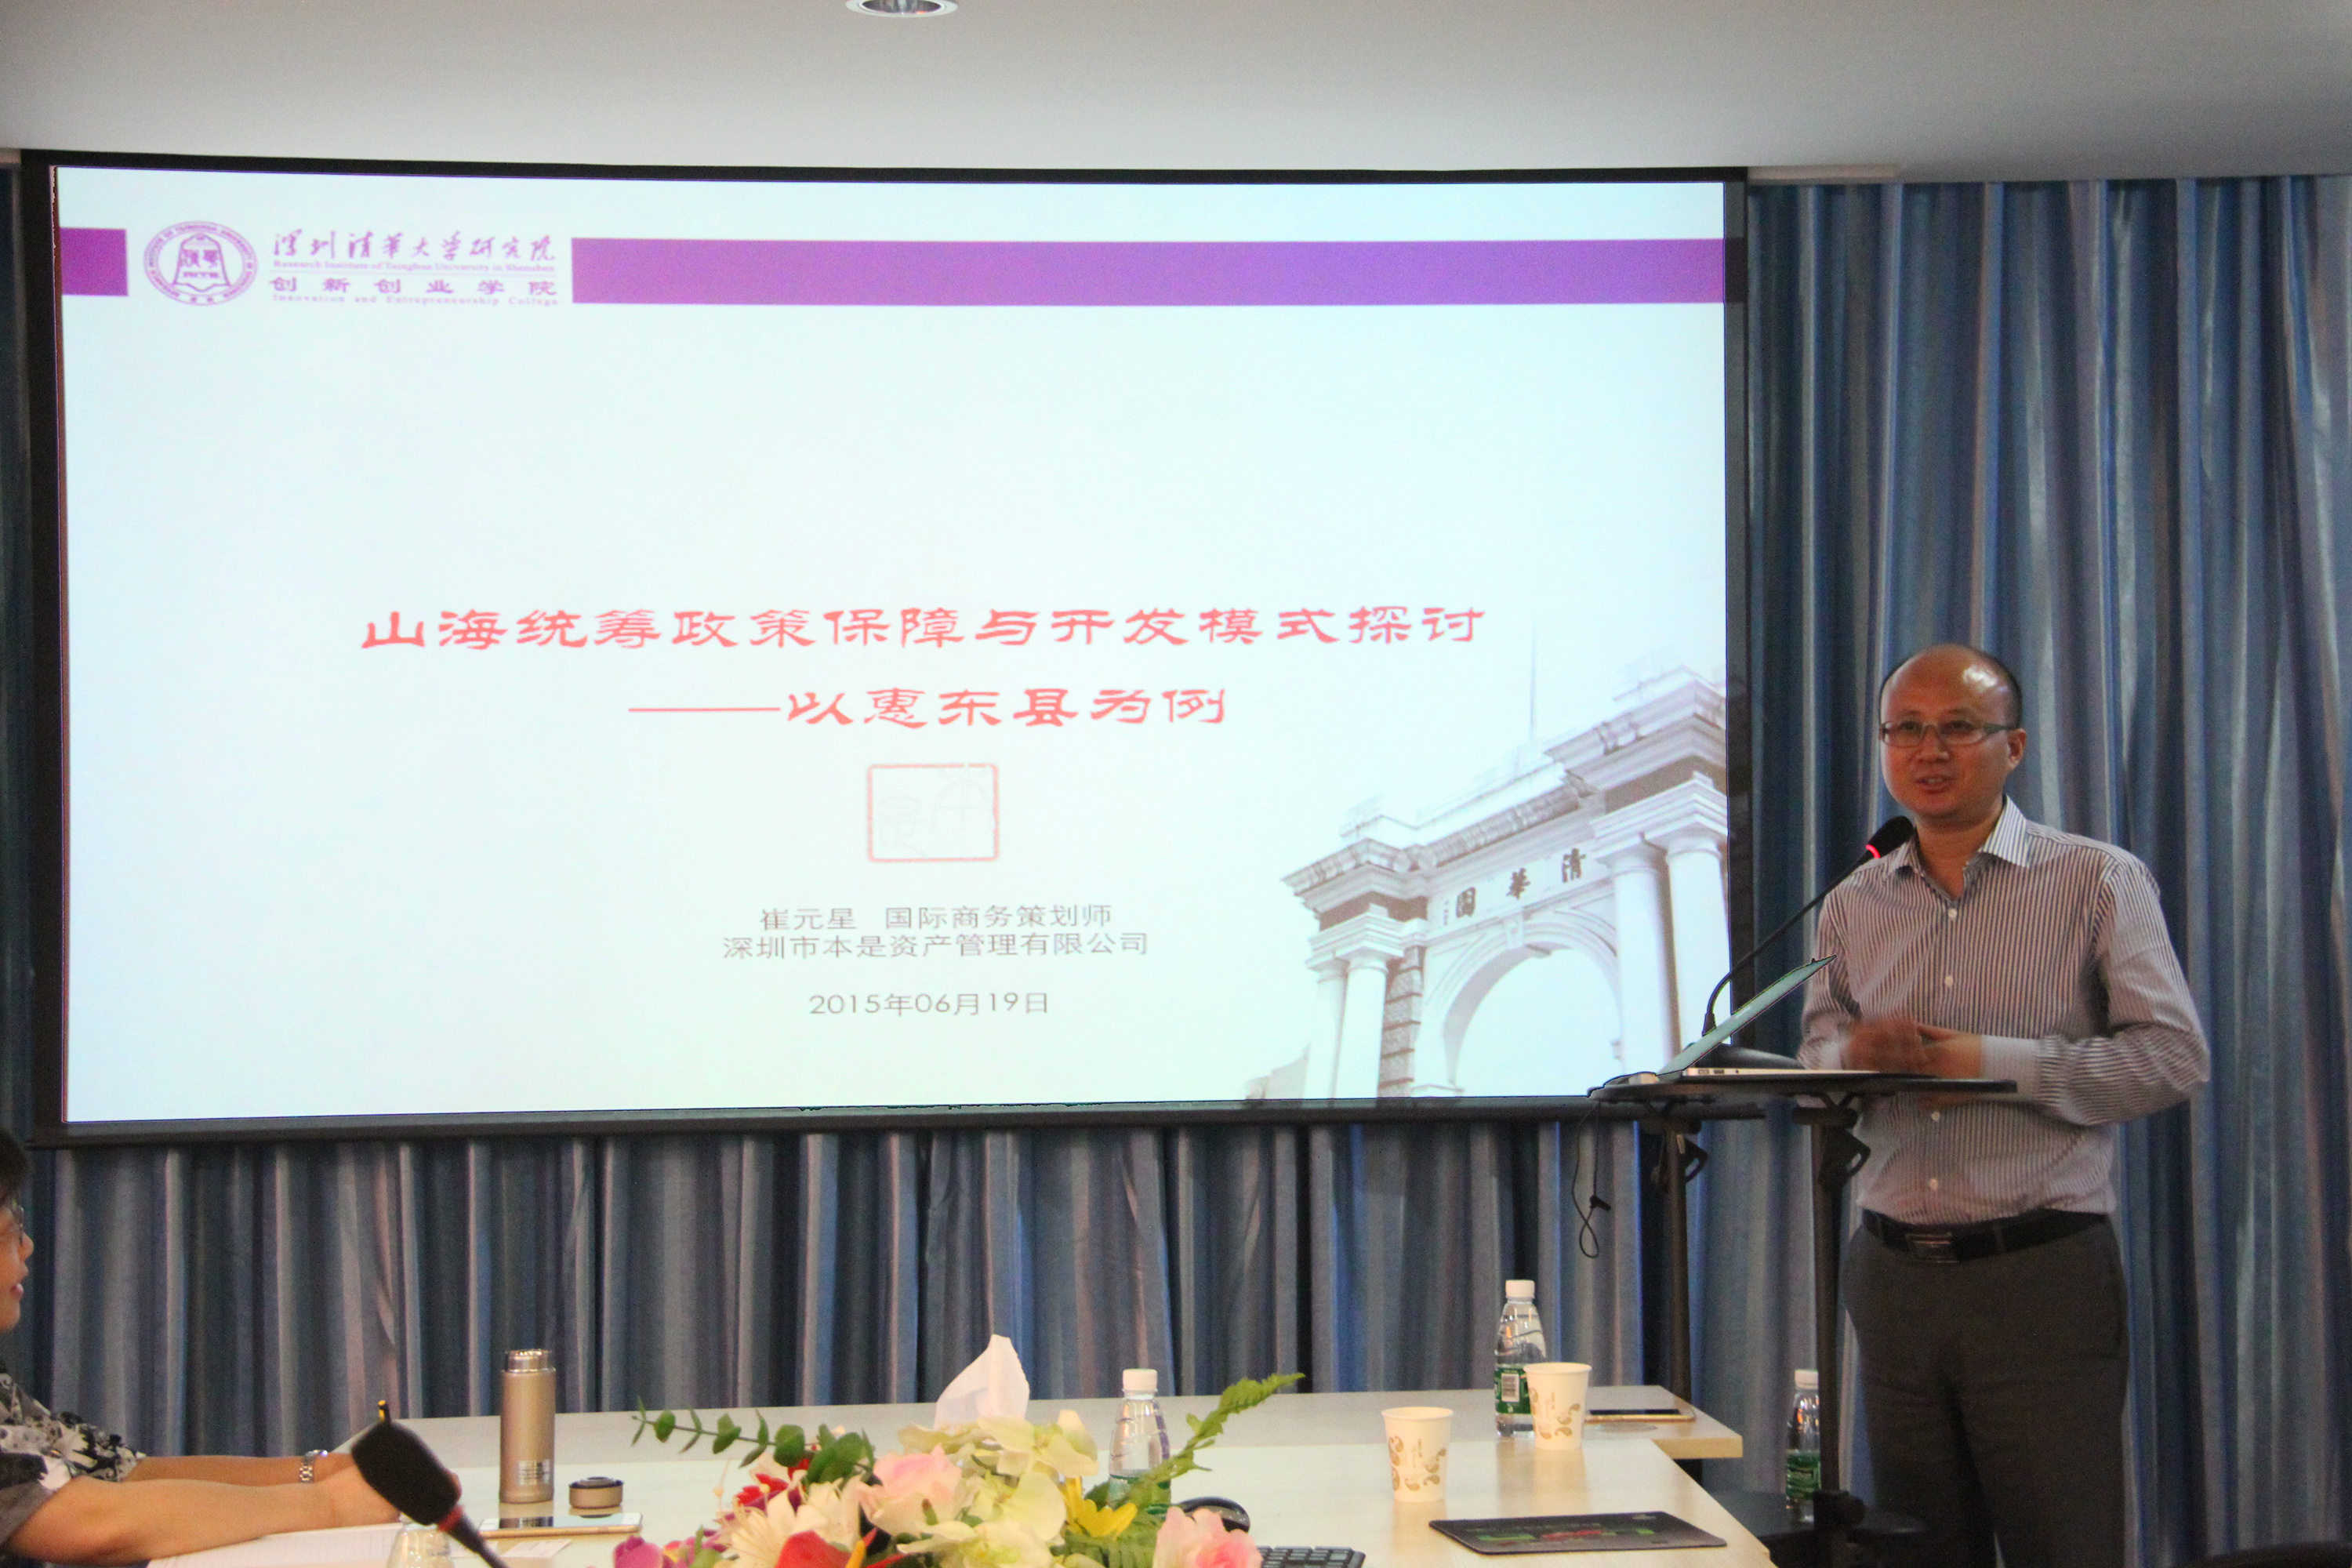 学术沙龙第六十七期--山海统筹规划政策保障与开发模式探讨--以惠东县为例